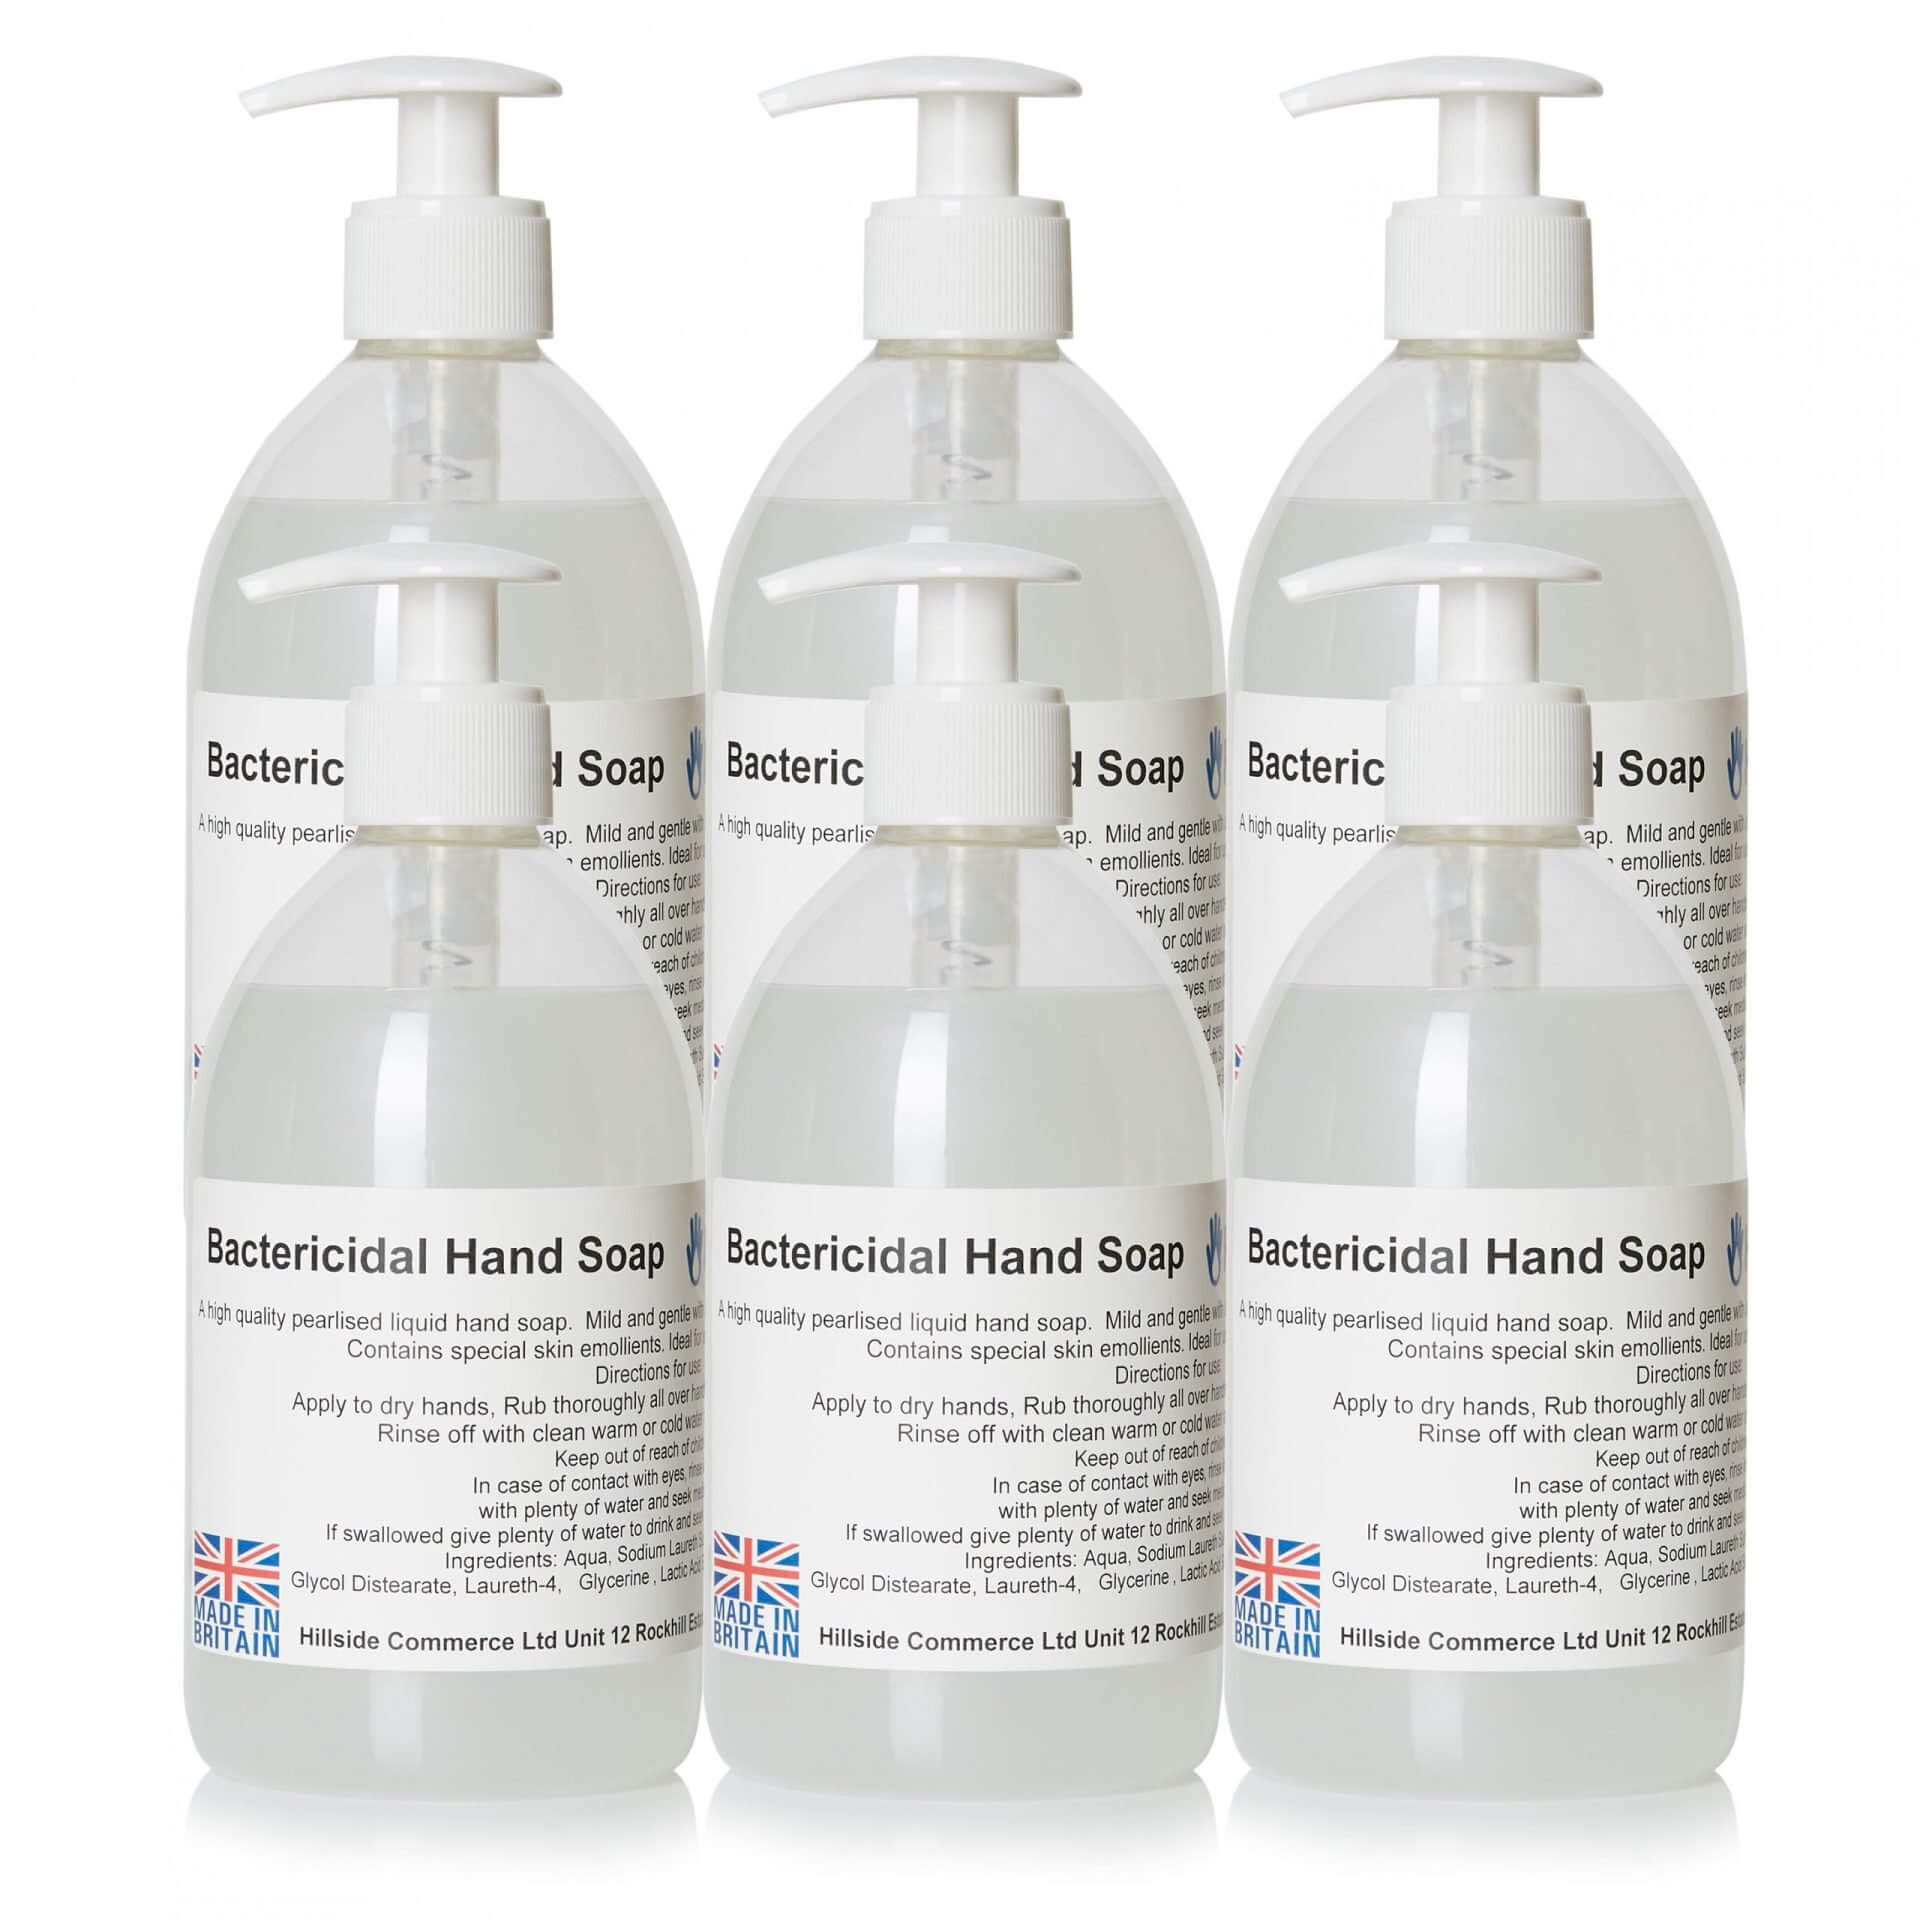 AntiBac Bactericidal Liquid Hand Soap 500ml Pump Top Bottles x6